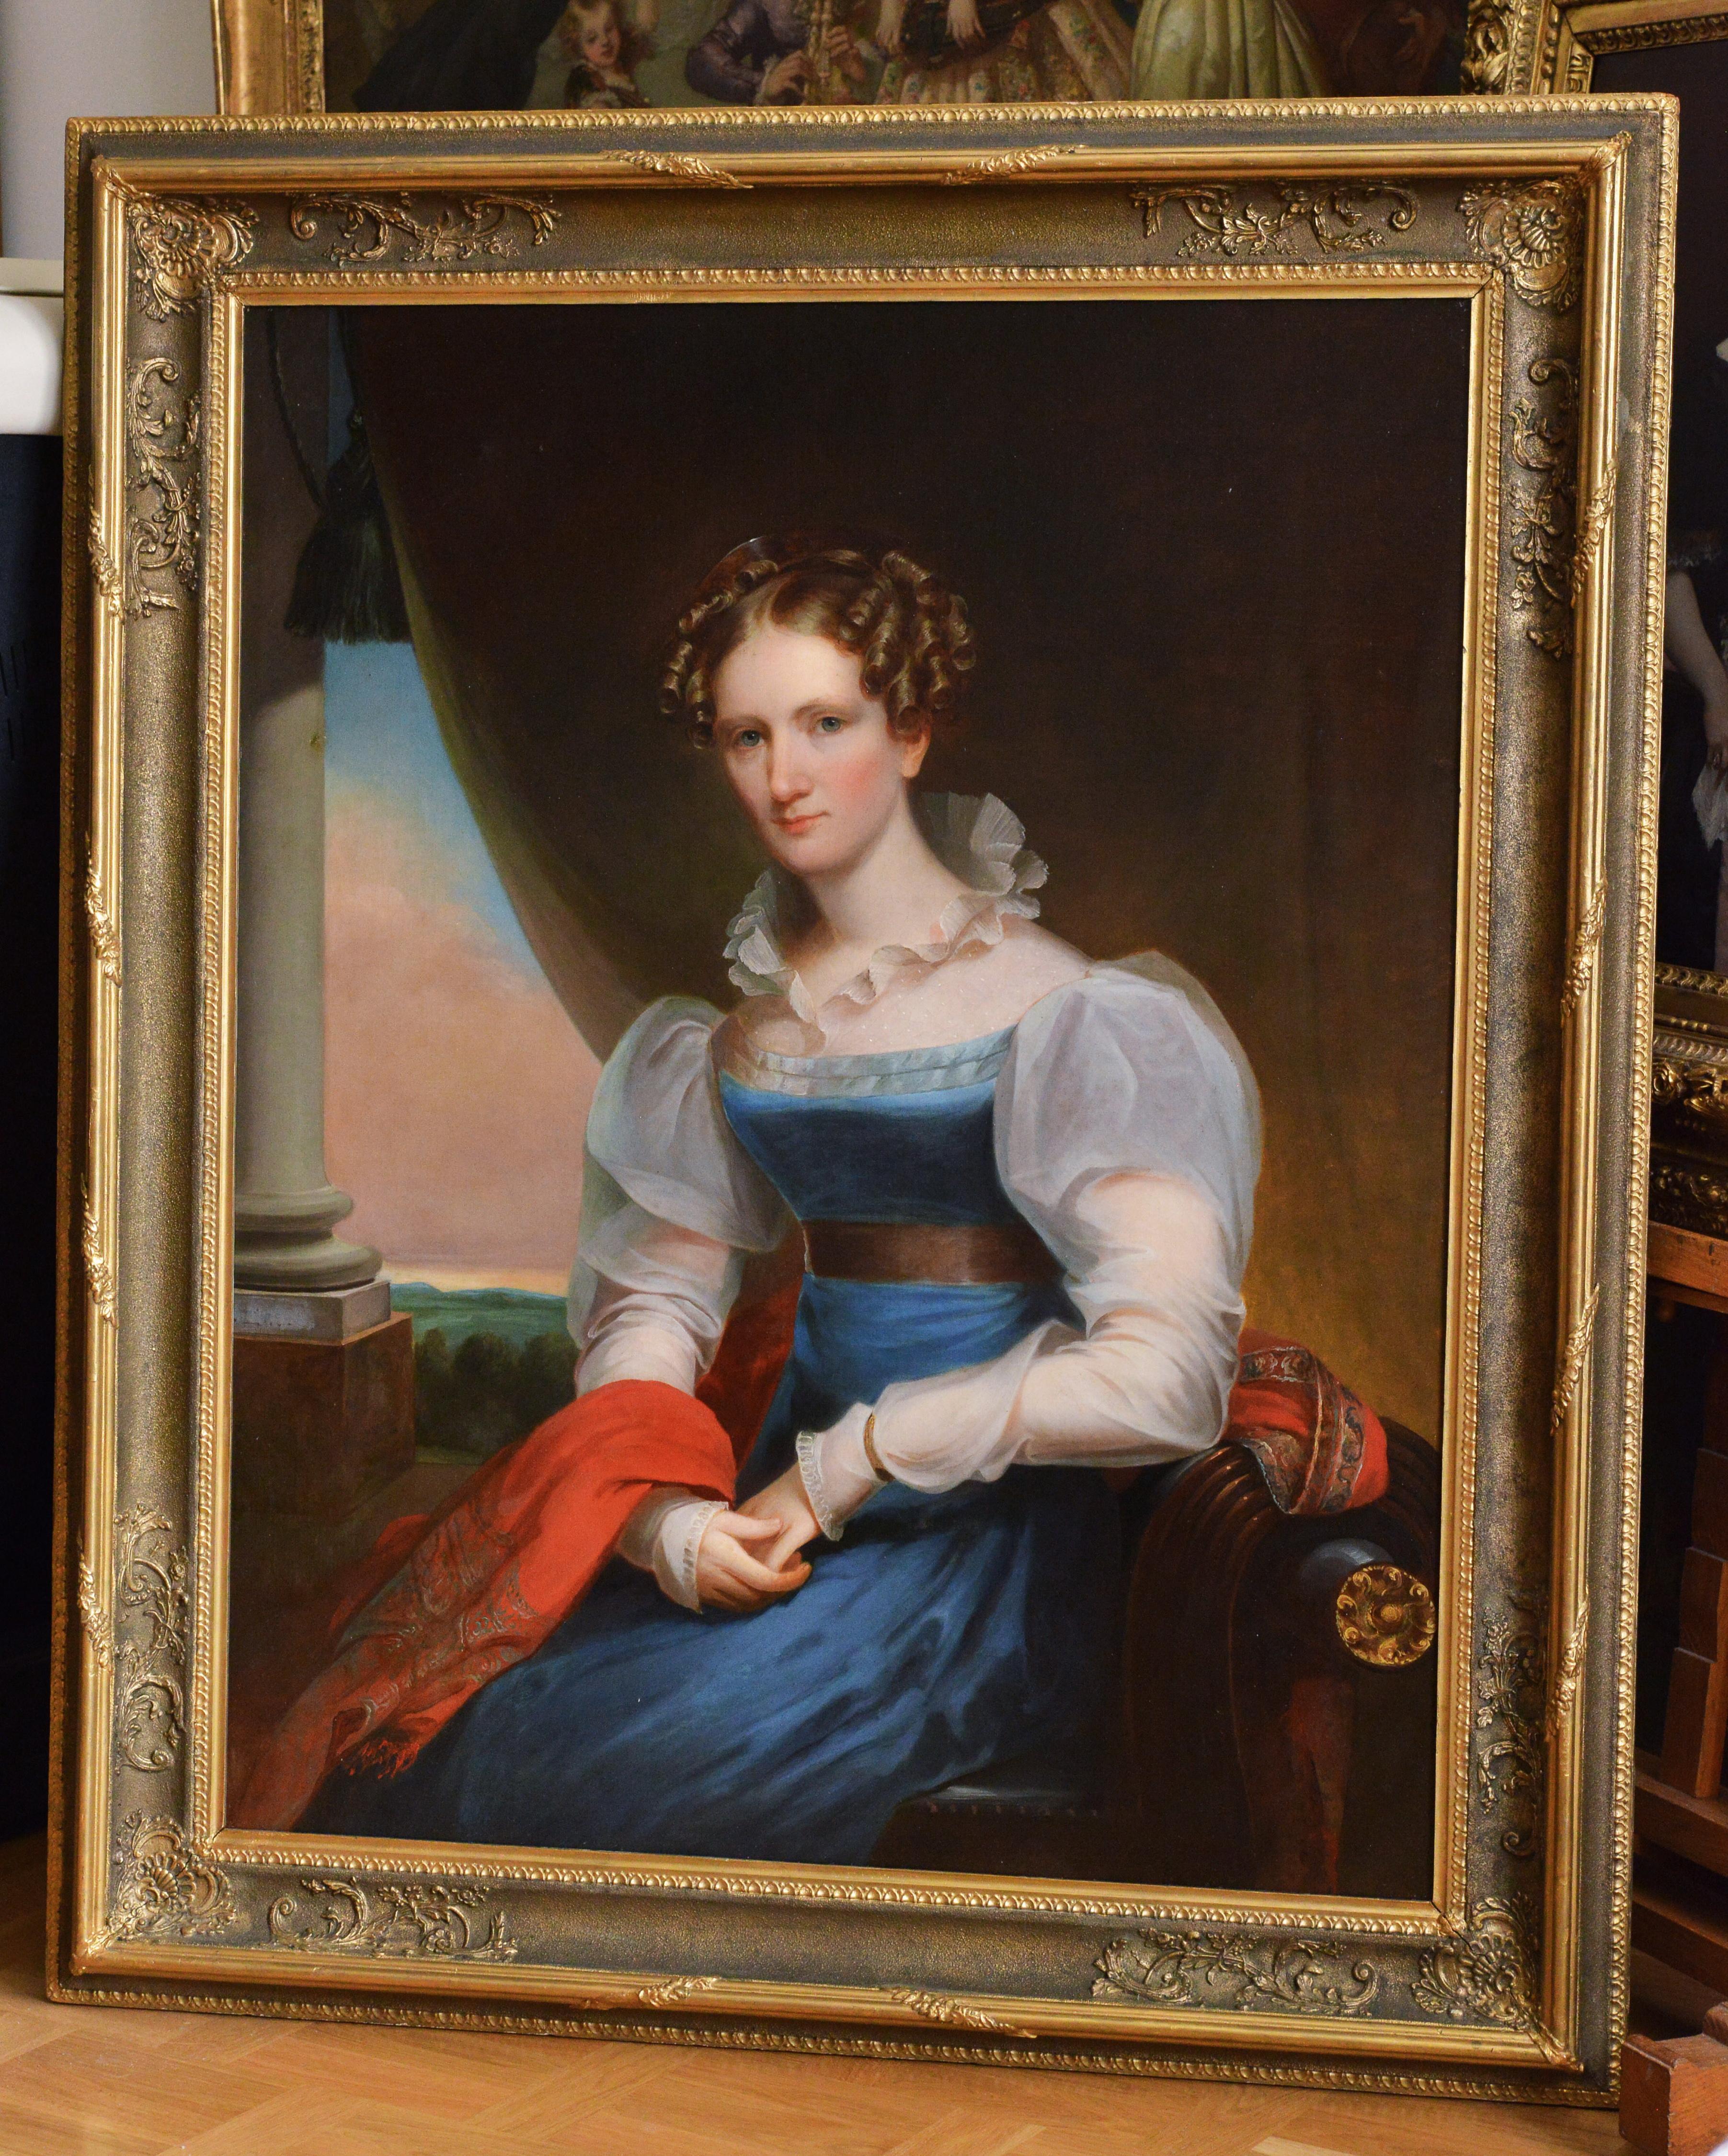 Artiste américain Portrait Femme allemande 19e siècle Huile sur toile de J. Eichholtz - Painting de Jacob Eichholtz